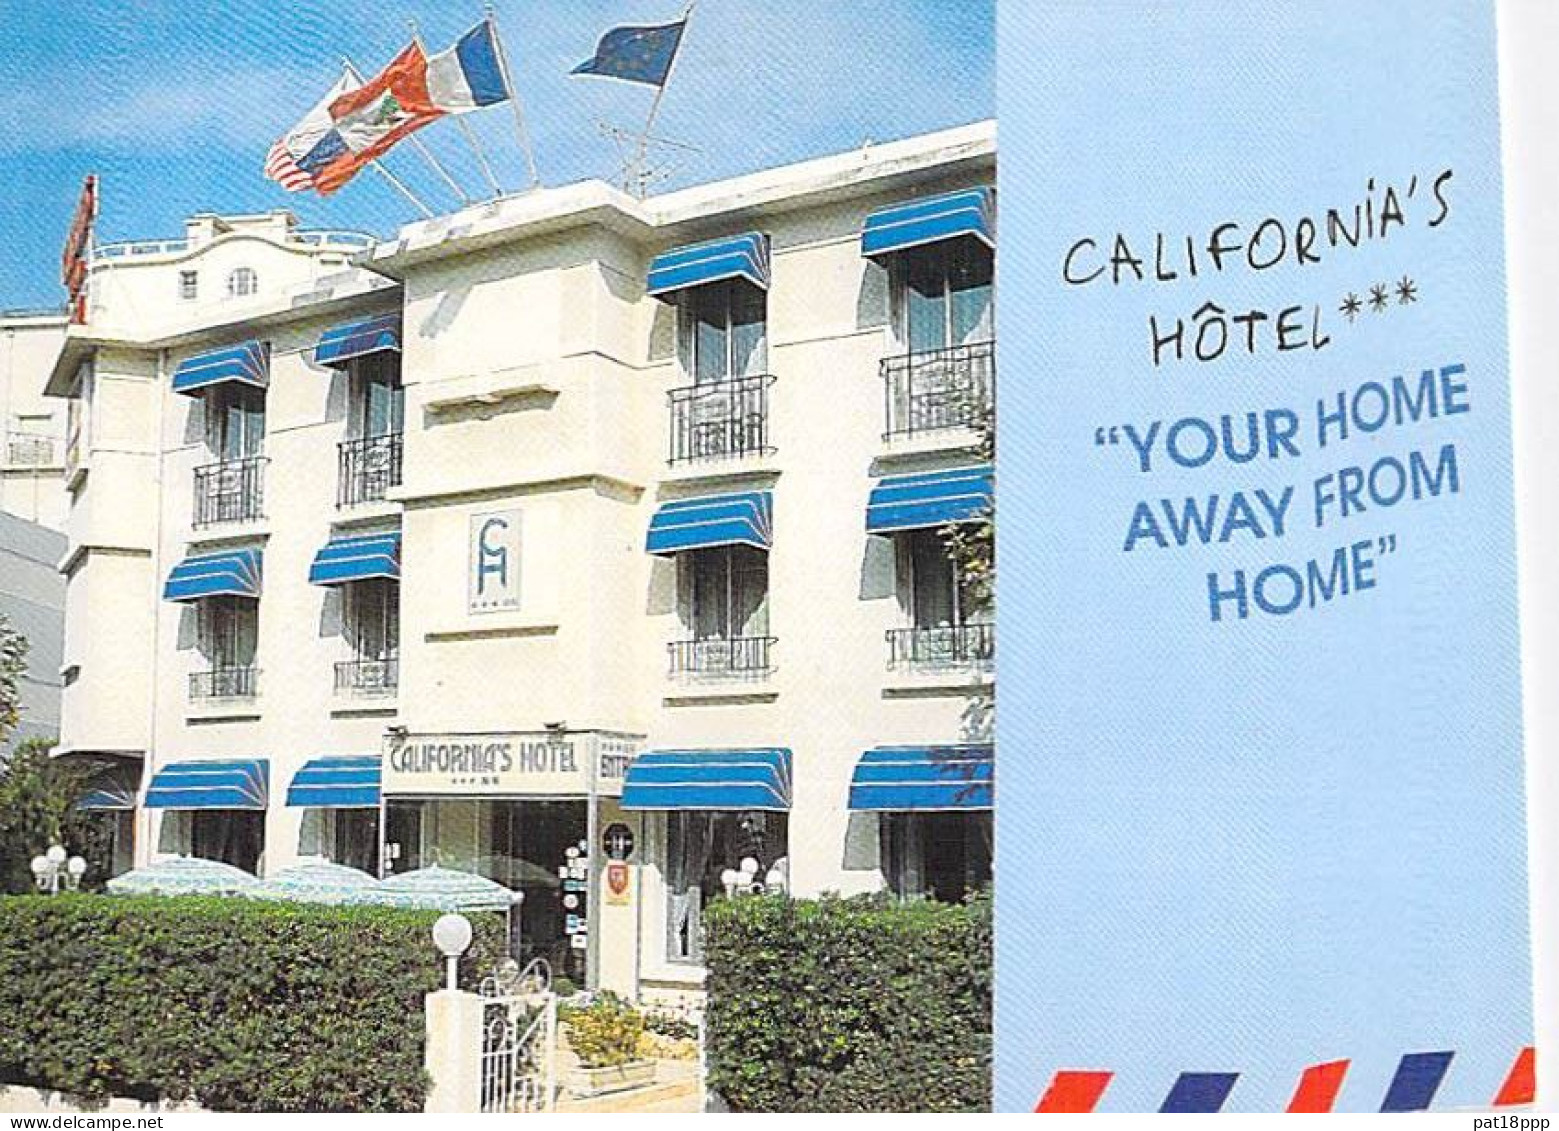 HOTEL RESTAURANT - Bon Lot de 20 CPSM-CPM - CANNES (06) Alpes Maritimes (dont qqs peu fréquents et/ou disparus)